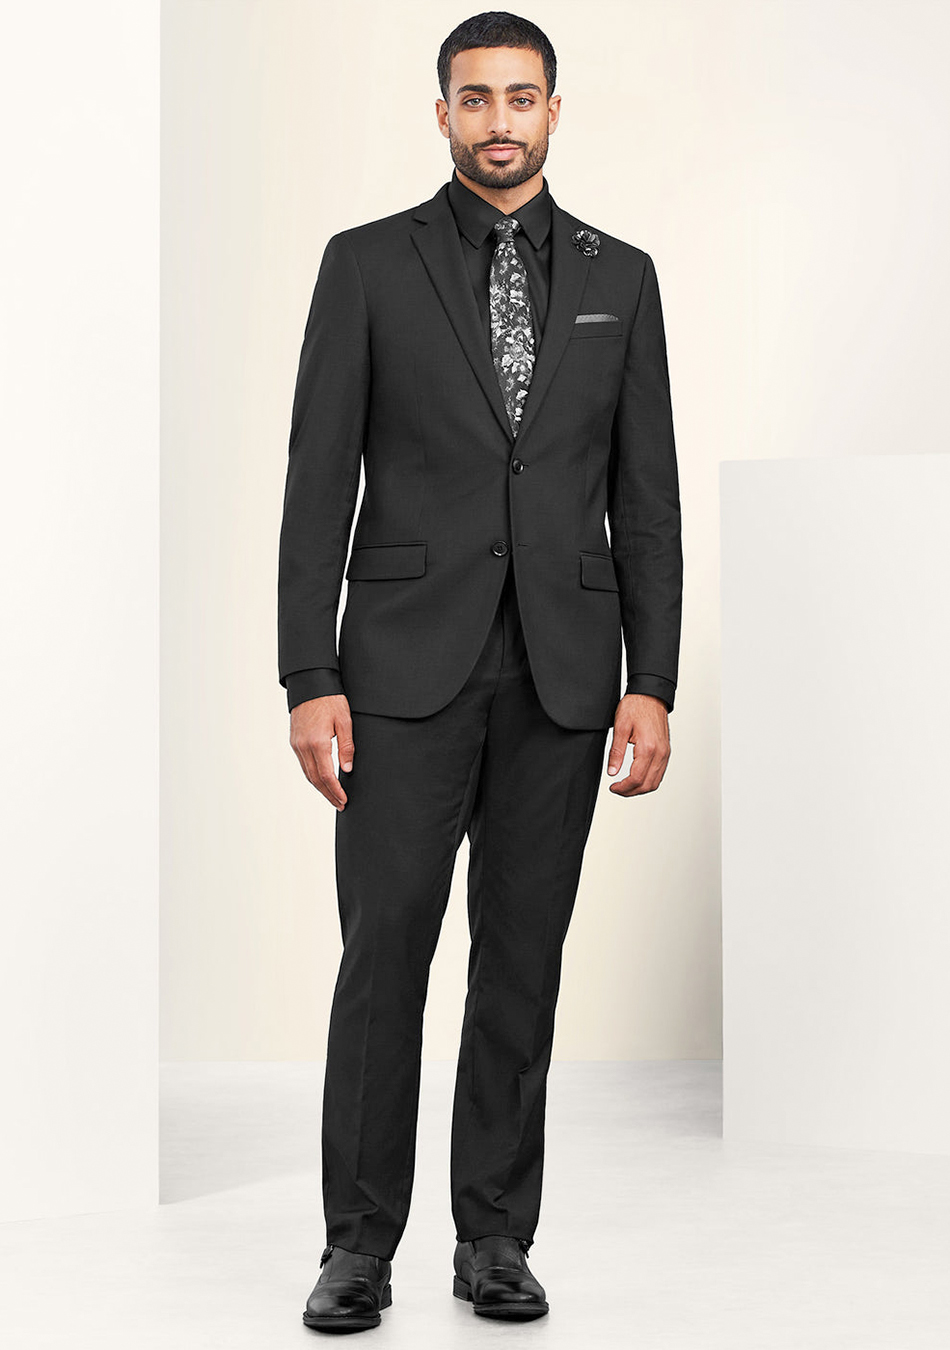 Black suit, black shirt, floral tie, and black dress shoes